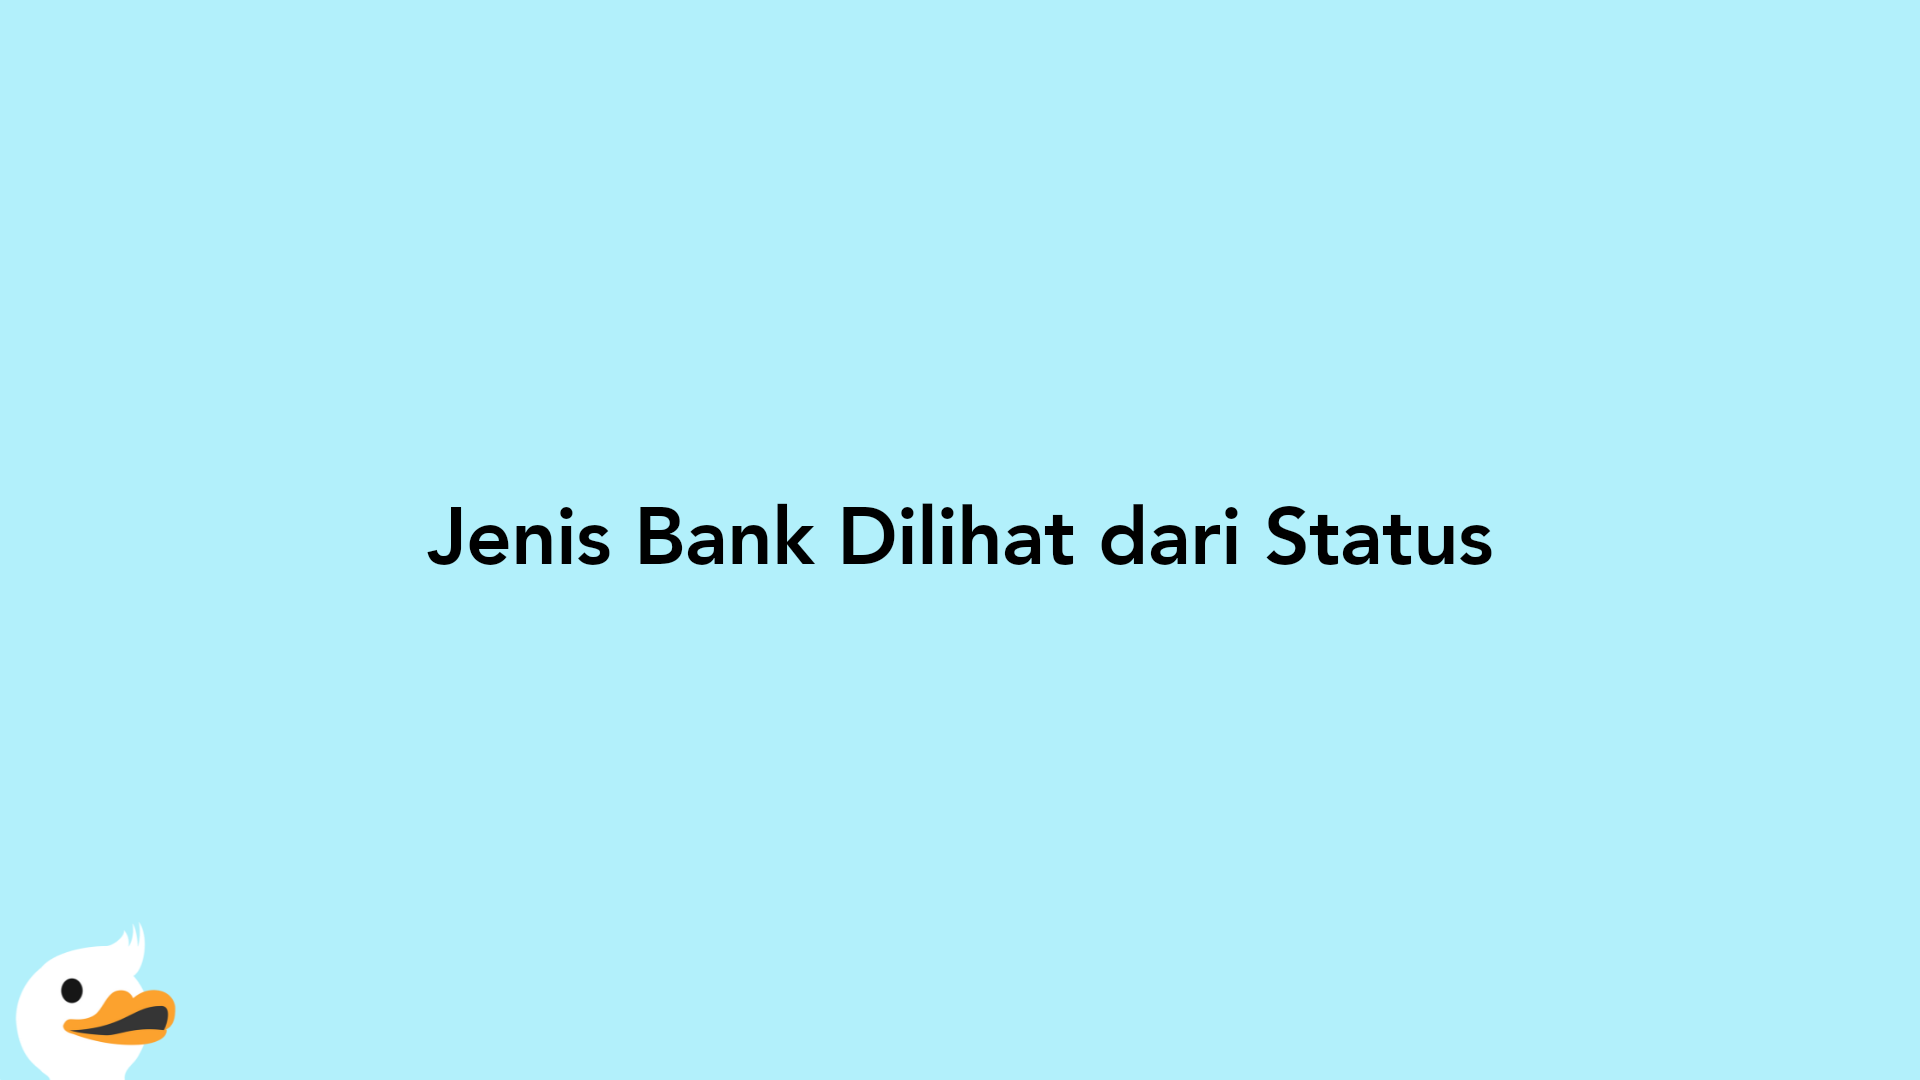 Jenis Bank Dilihat dari Status